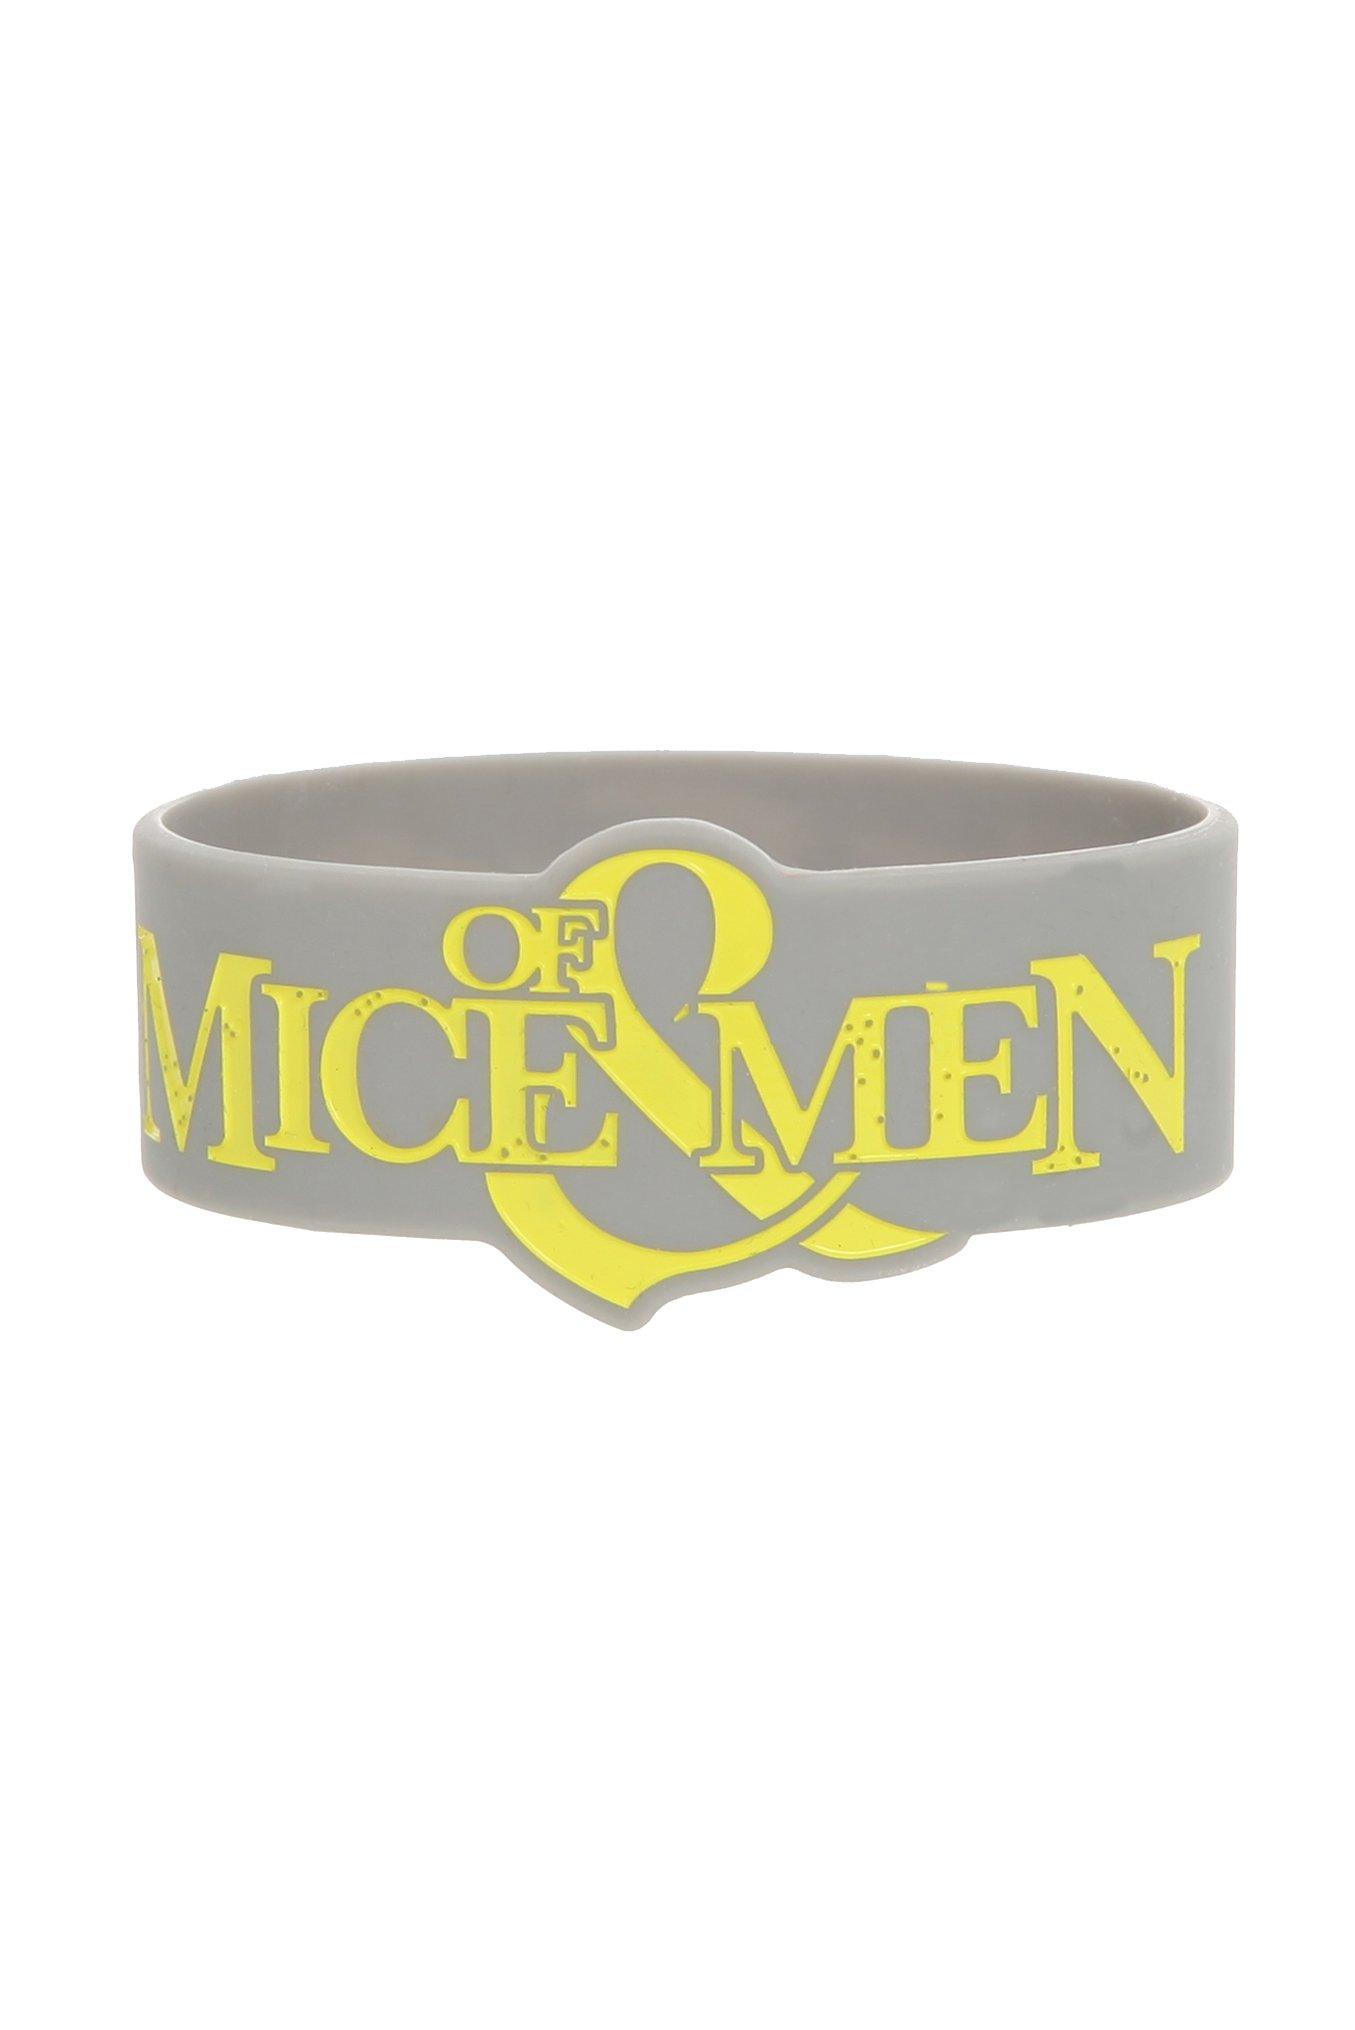 Of Mice & Men The Flood Rubber Bracelet, , hi-res